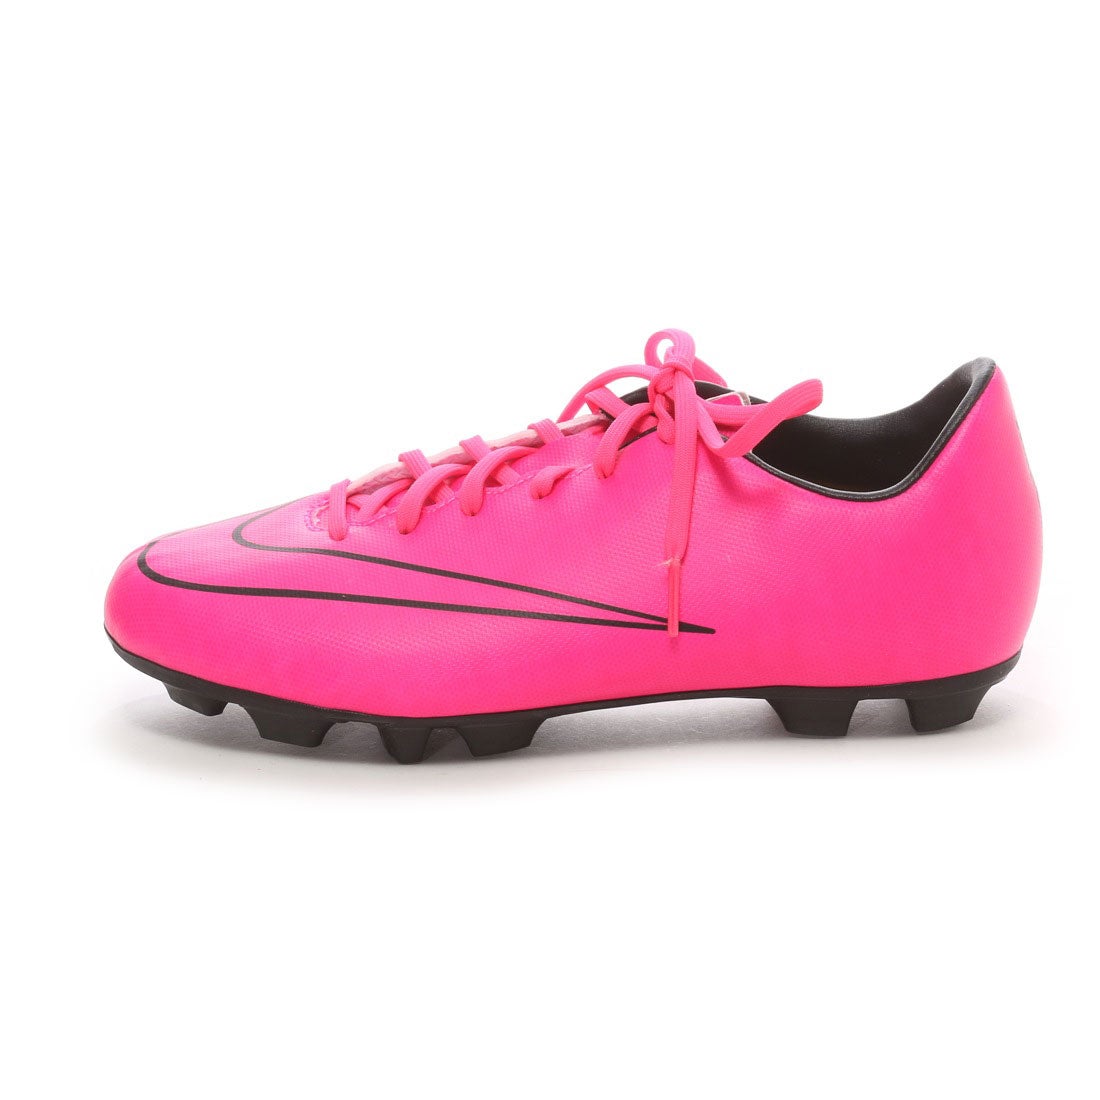 ナイキ Nike ジュニアサッカースパイク Jr マーキュリアル ビクトリー Hg V ピンク 2665 ピンクp 靴 ファッション通販 ロコンド 自宅で試着 気軽に返品